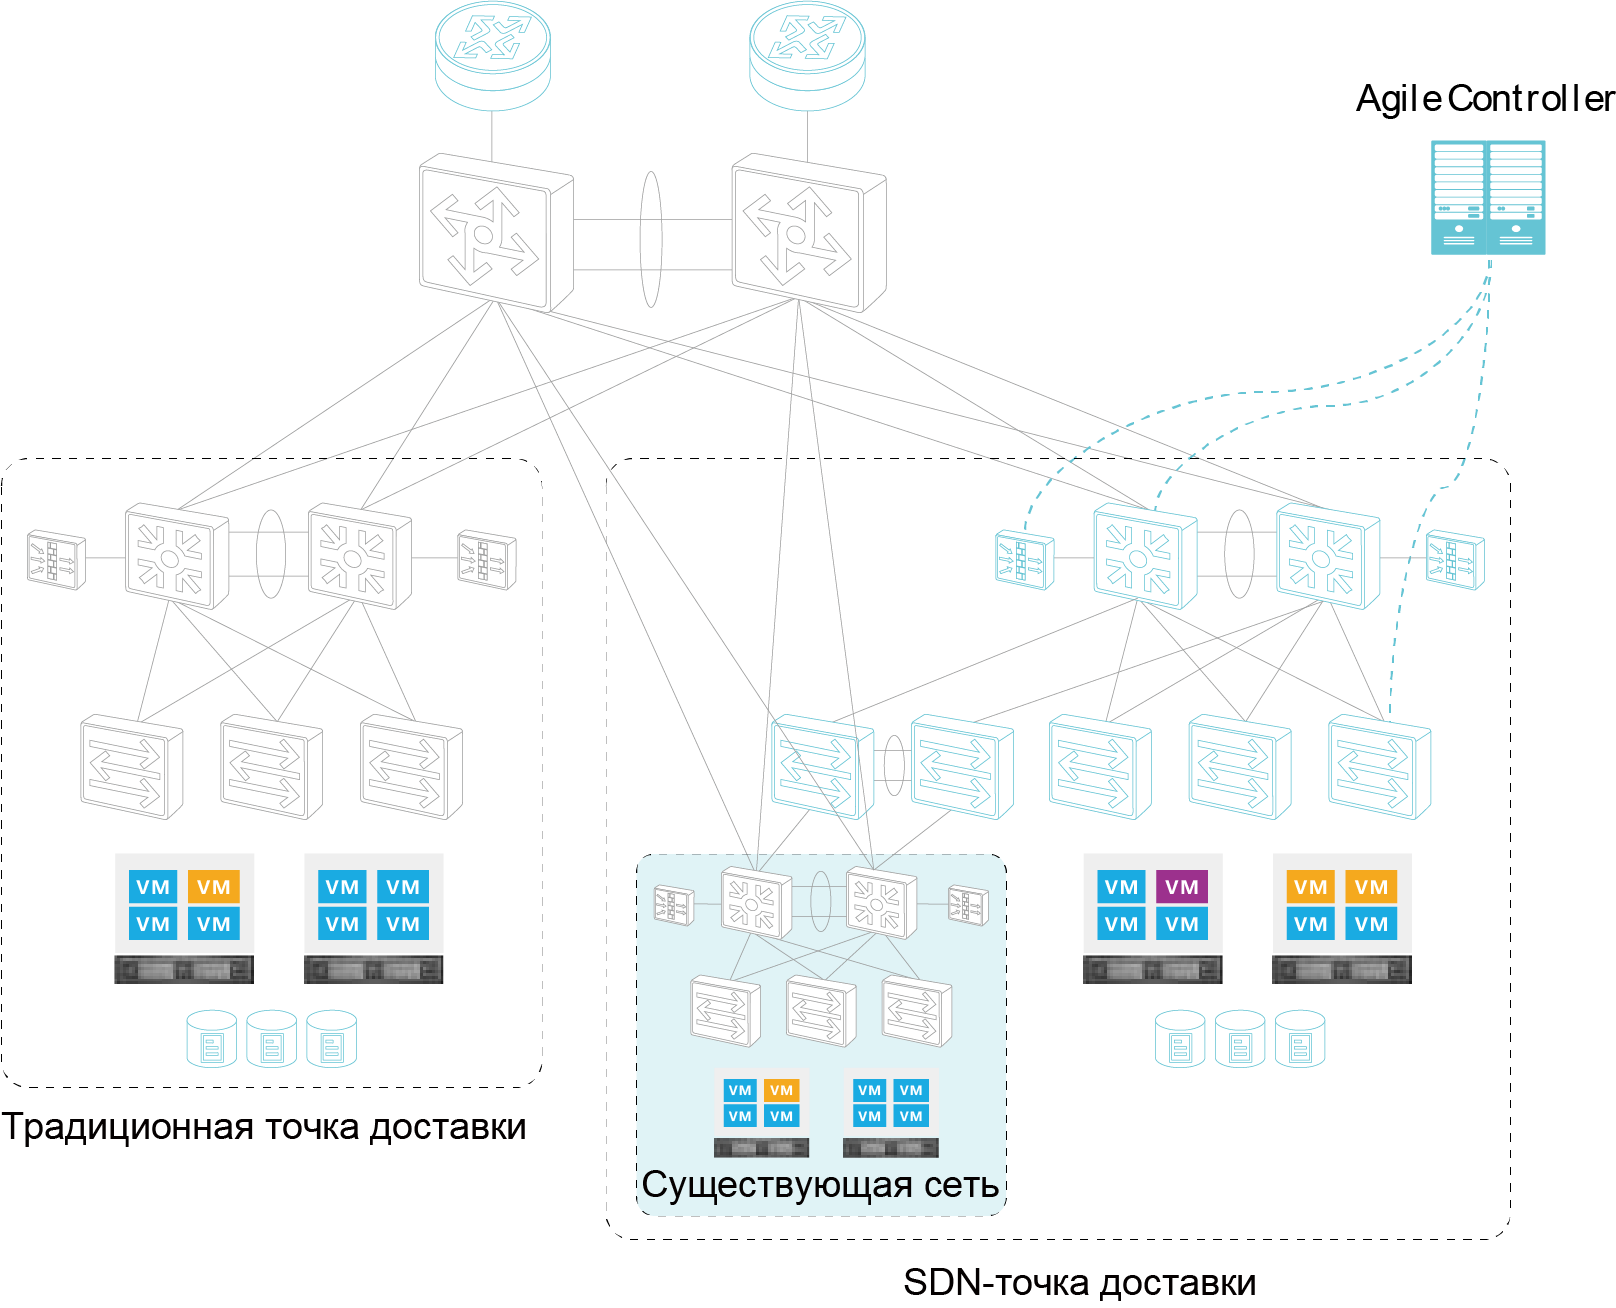 Дизайн сети при использовании L2-коммуникации выглядит следующим образом